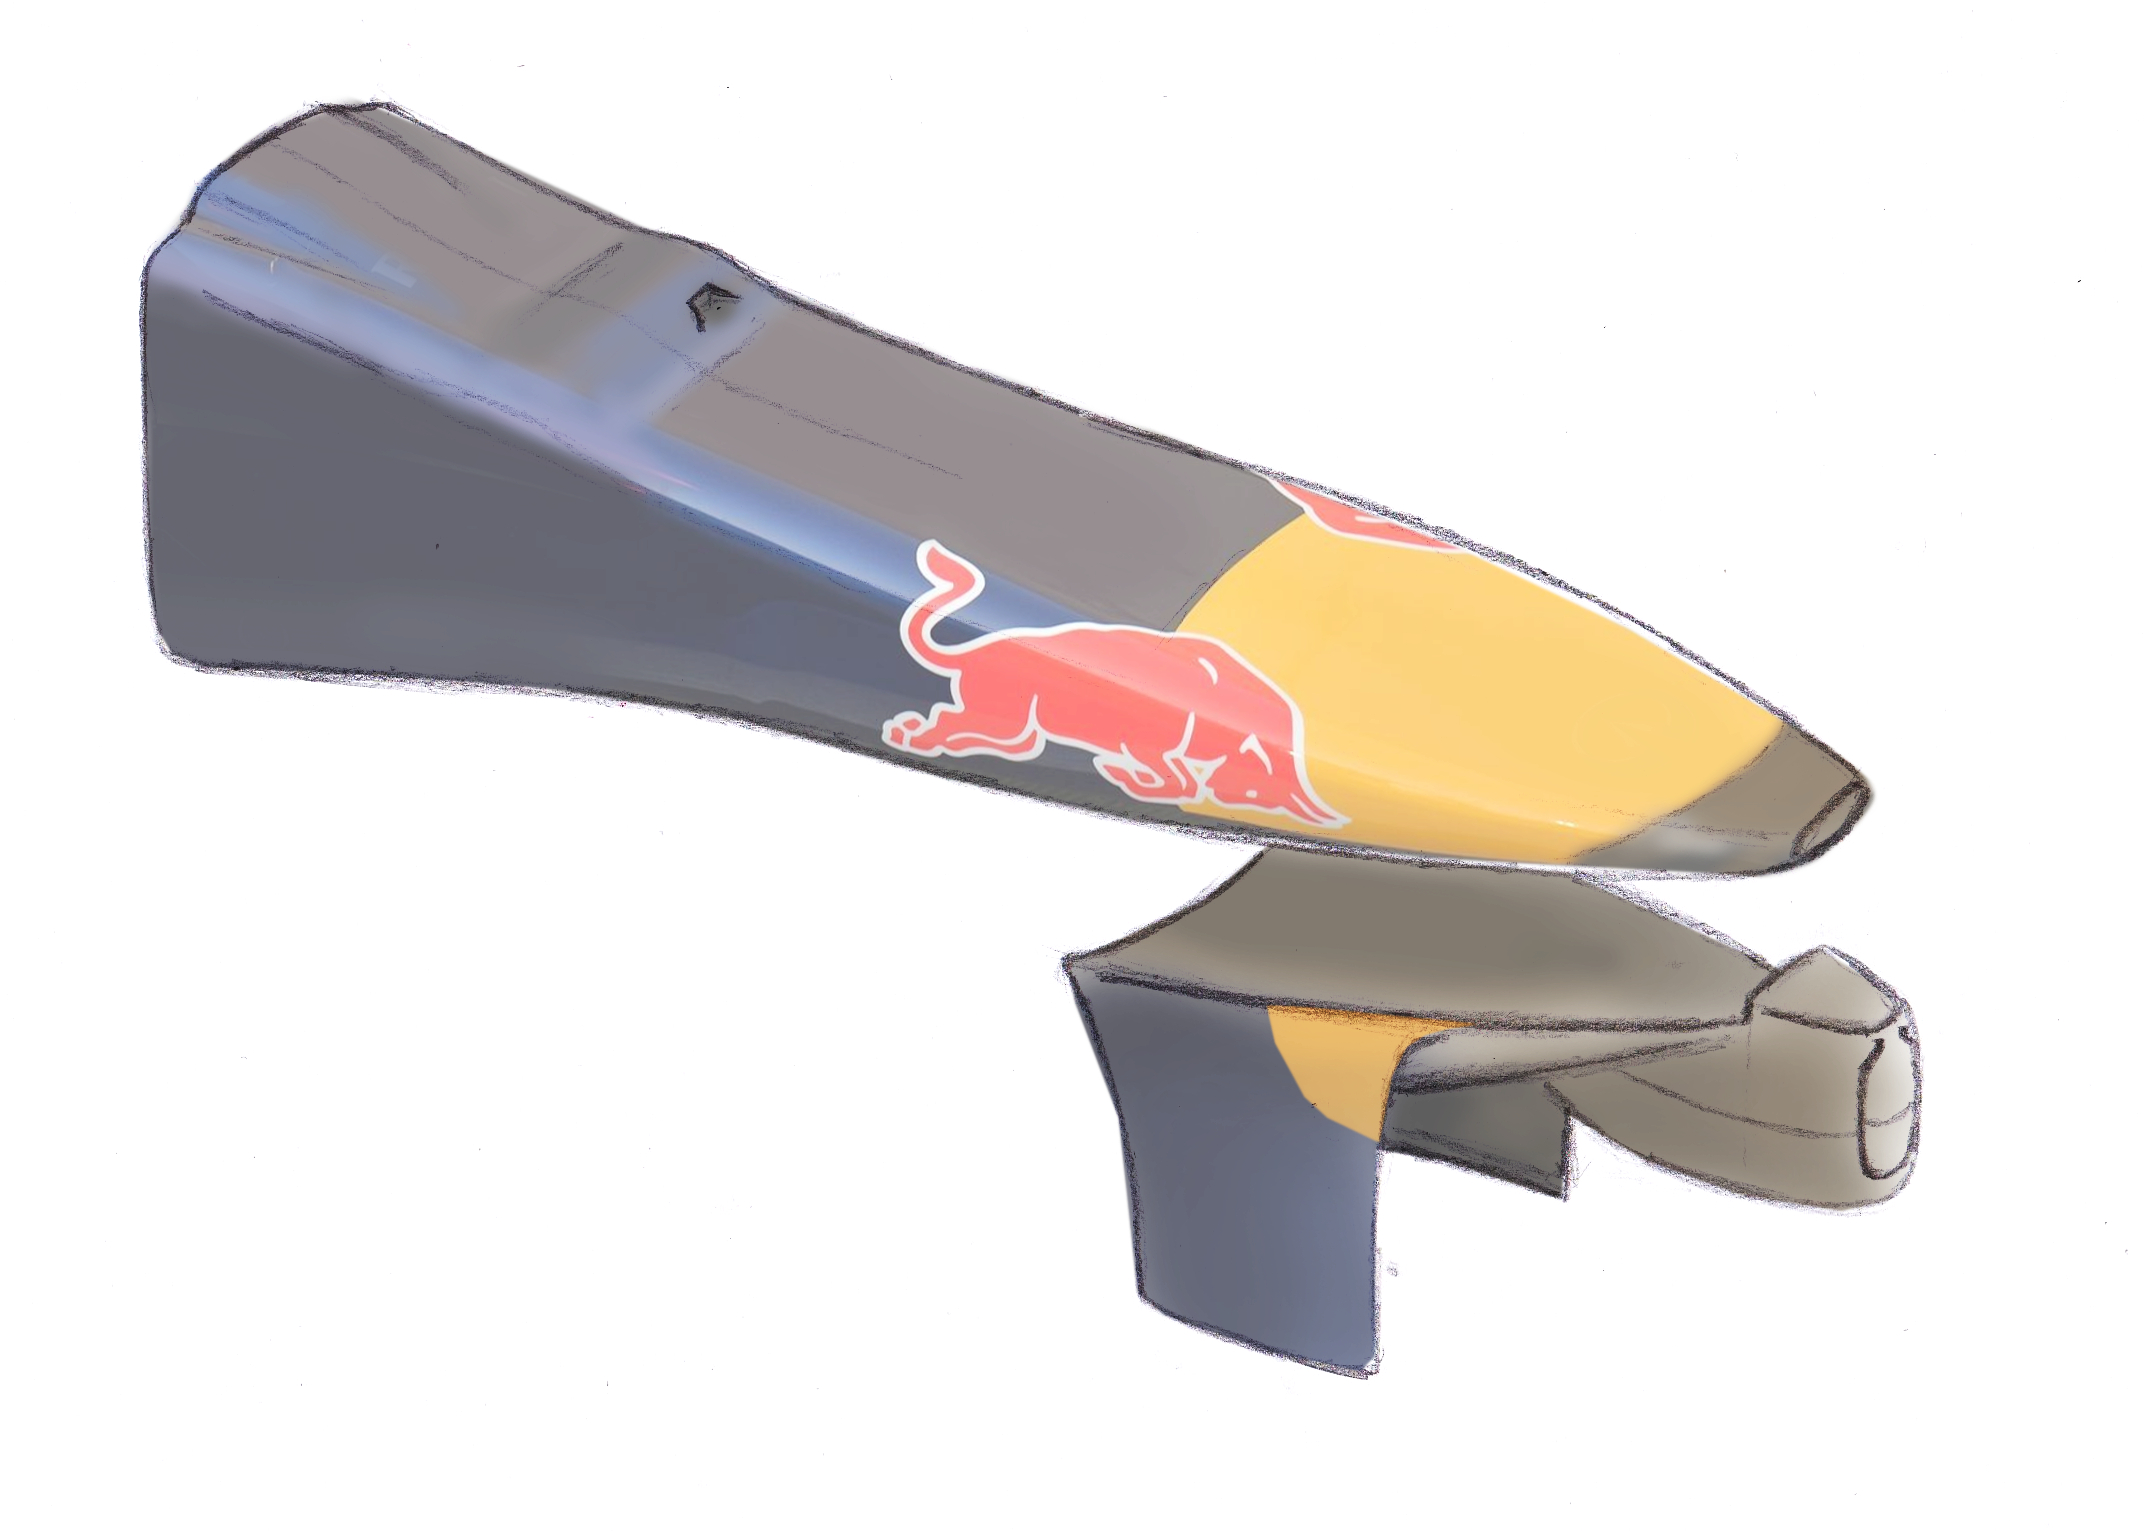 Detalle morro del Red Bull RB10